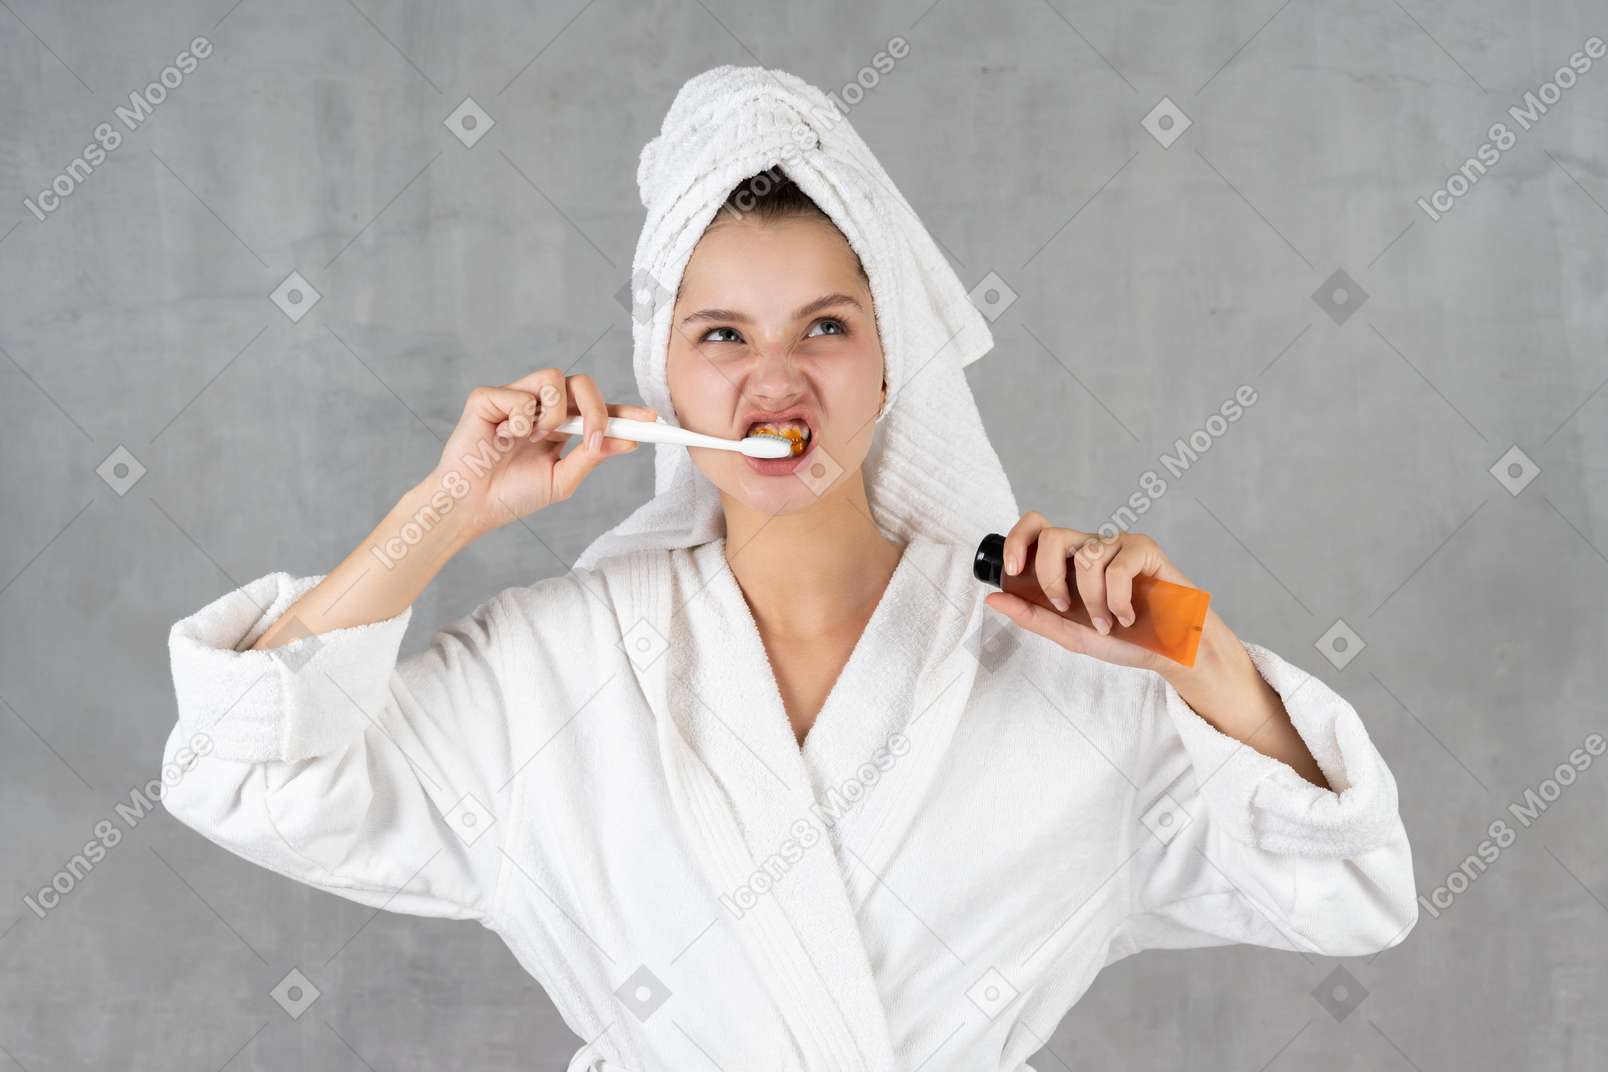 Женщина в халате корчит рожи, чистя зубы